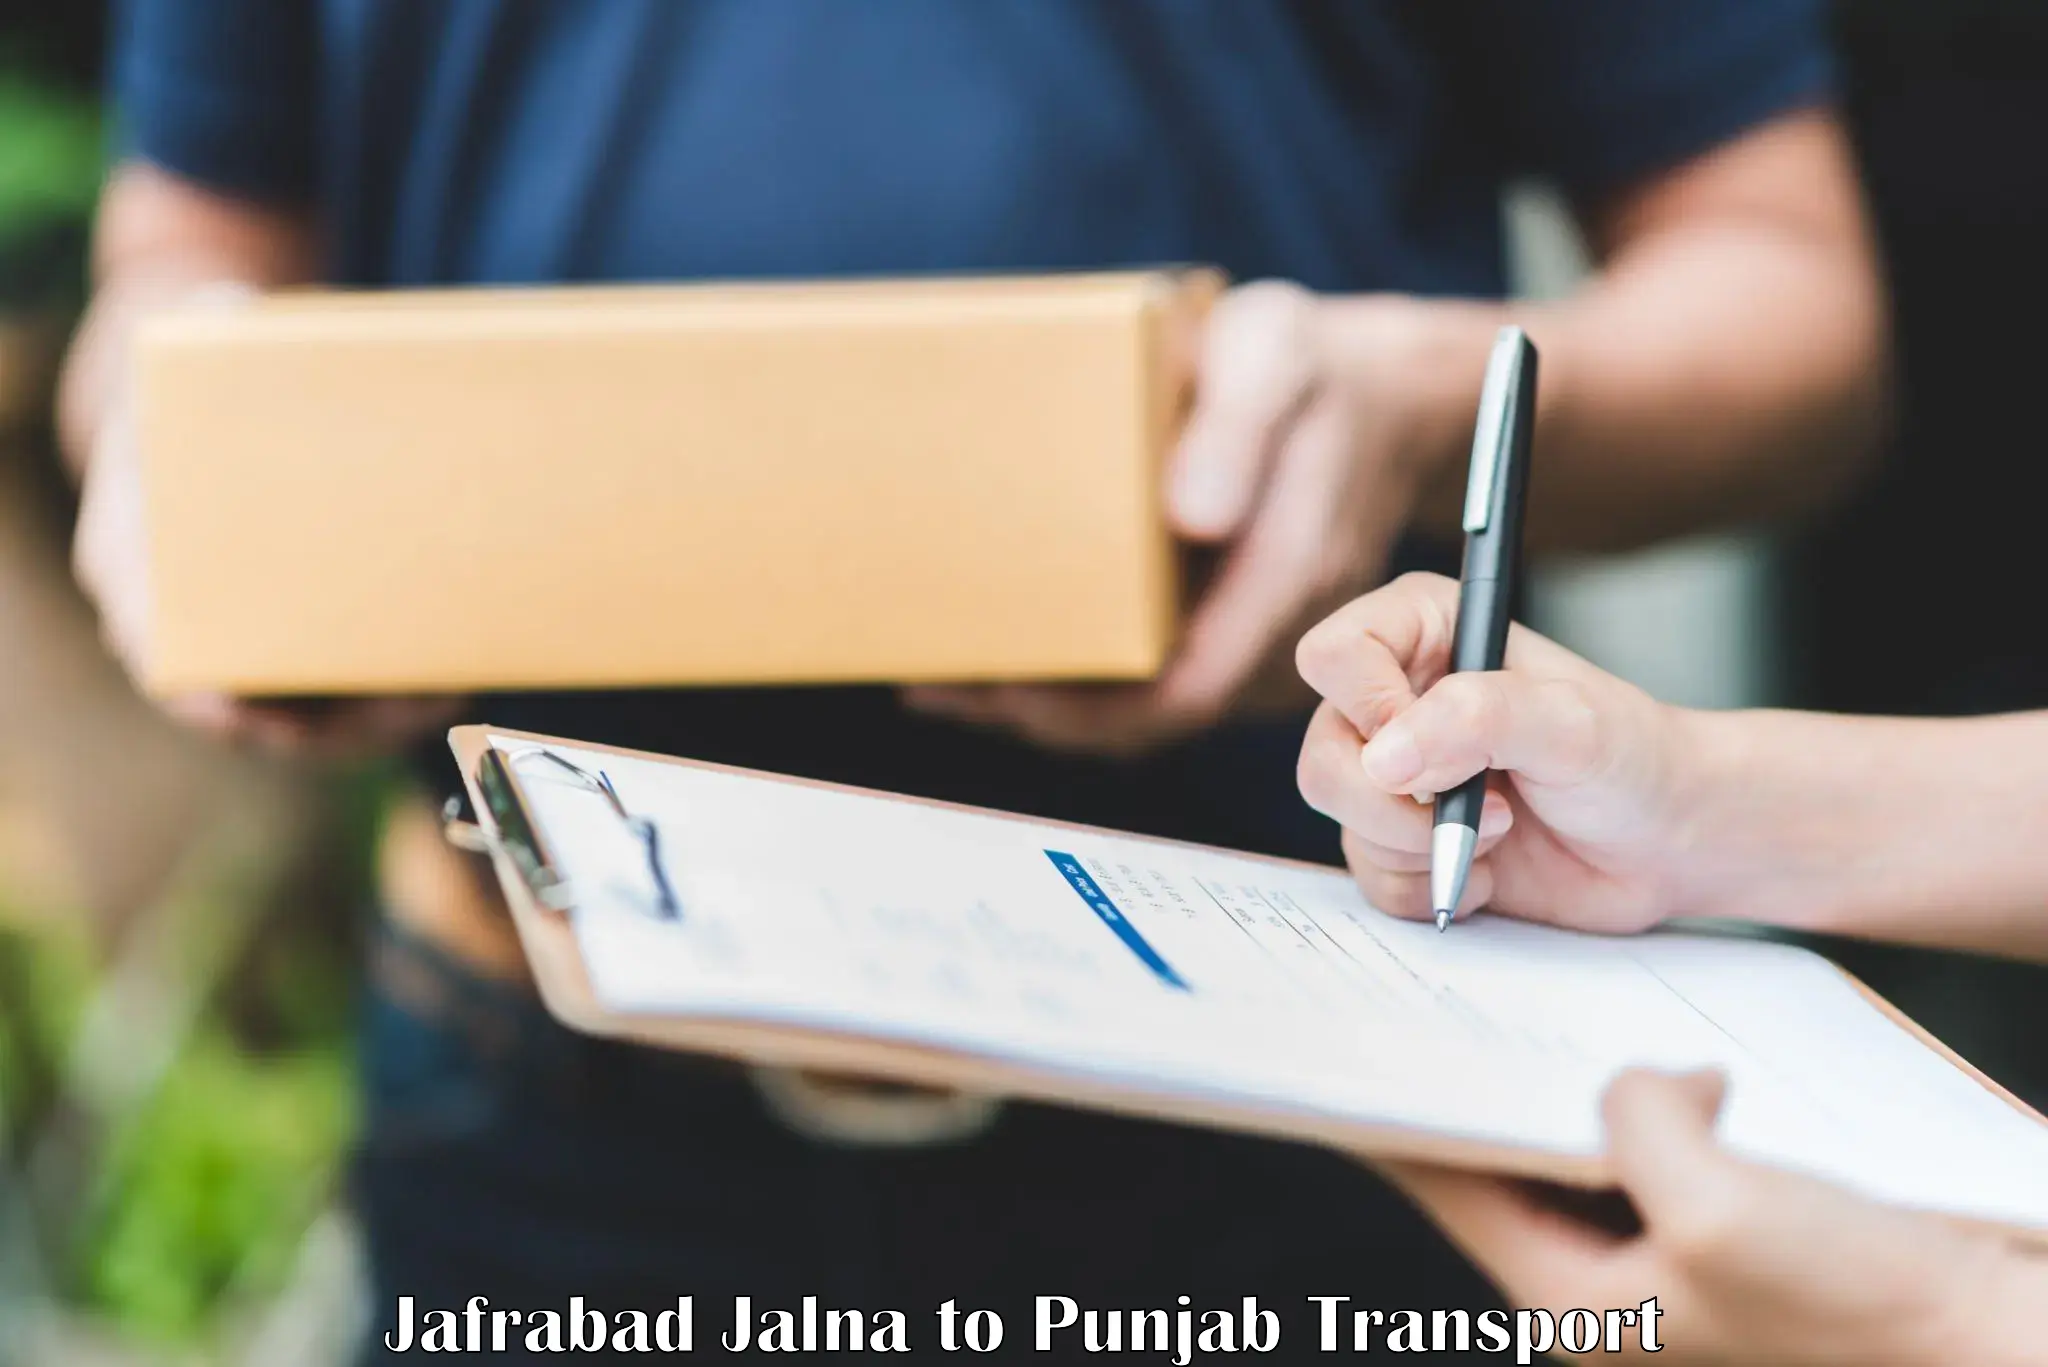 Nationwide transport services Jafrabad Jalna to Jhunir